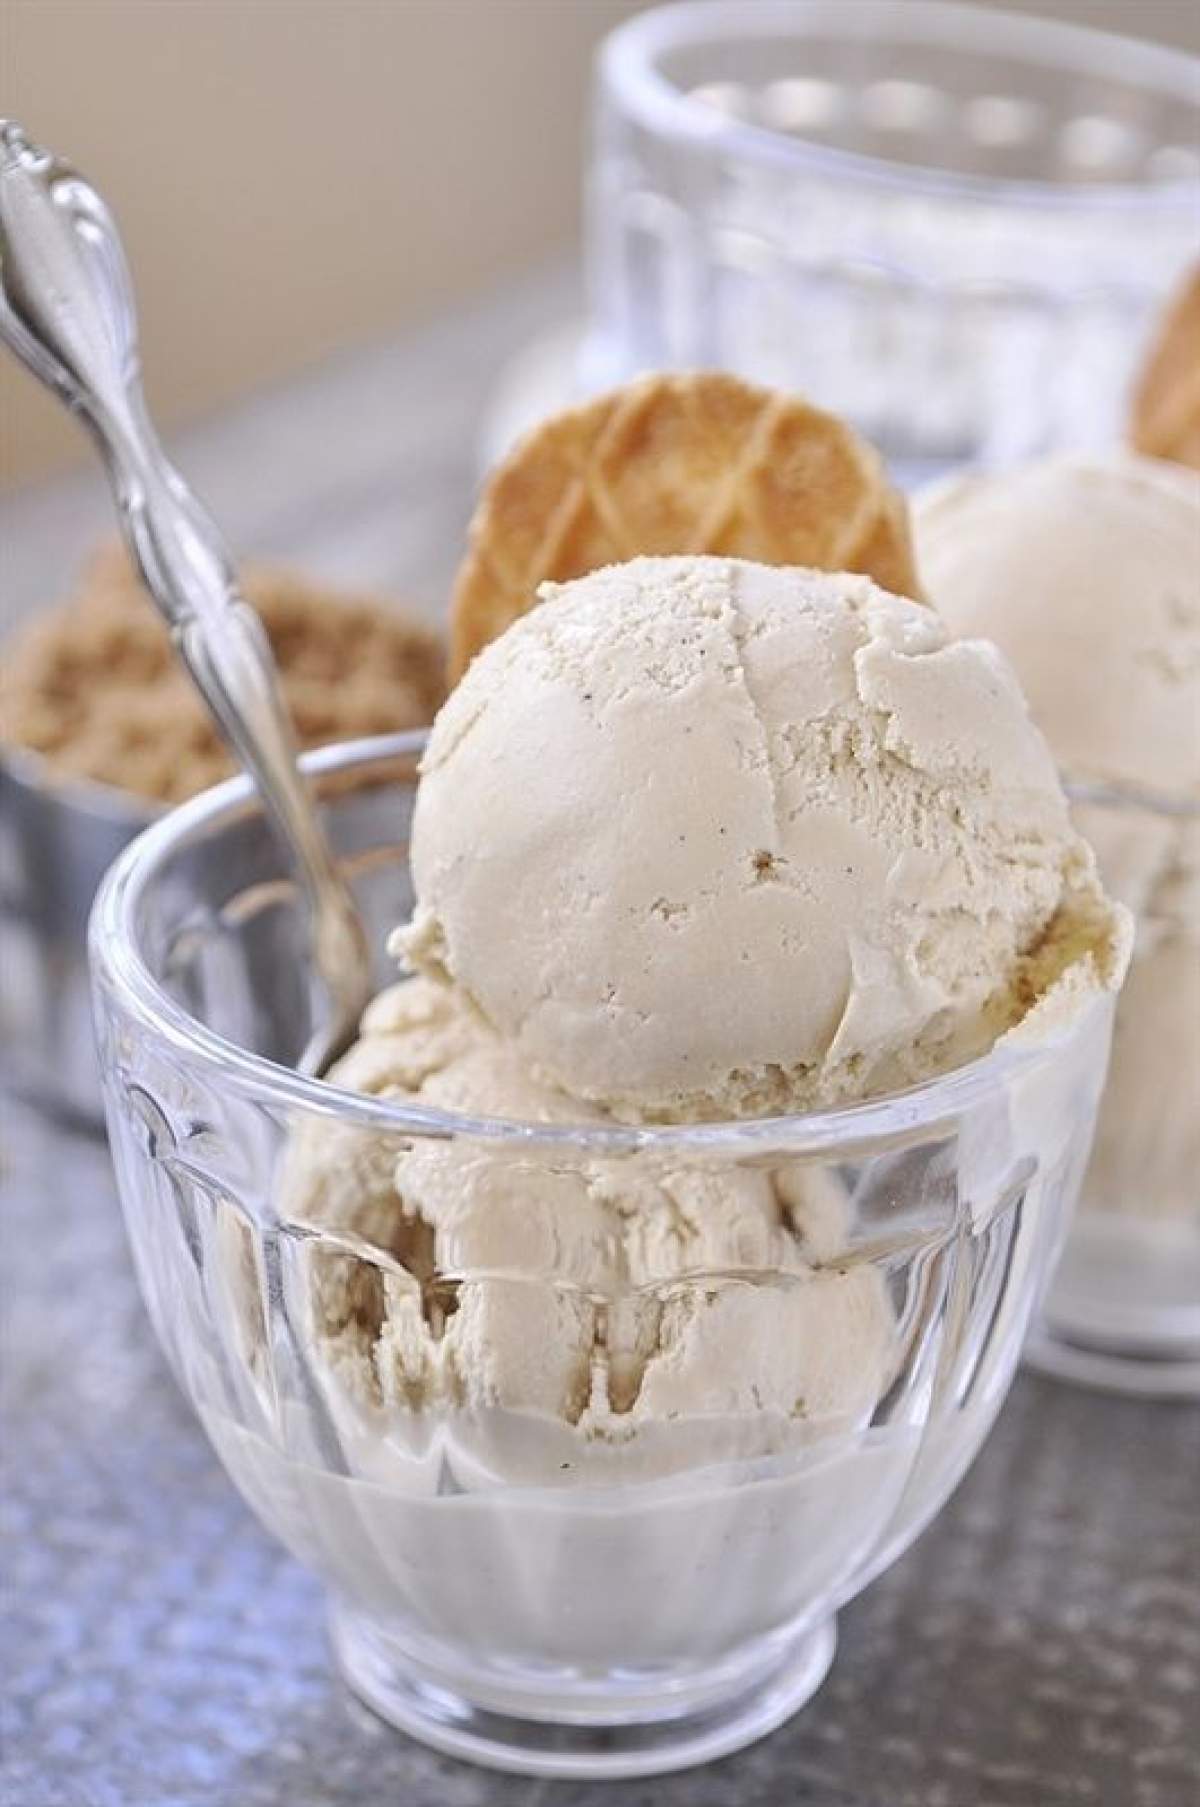 Desert înghețată de vanilie. O rețetă specială pentru cele mai călduroase zile de vară